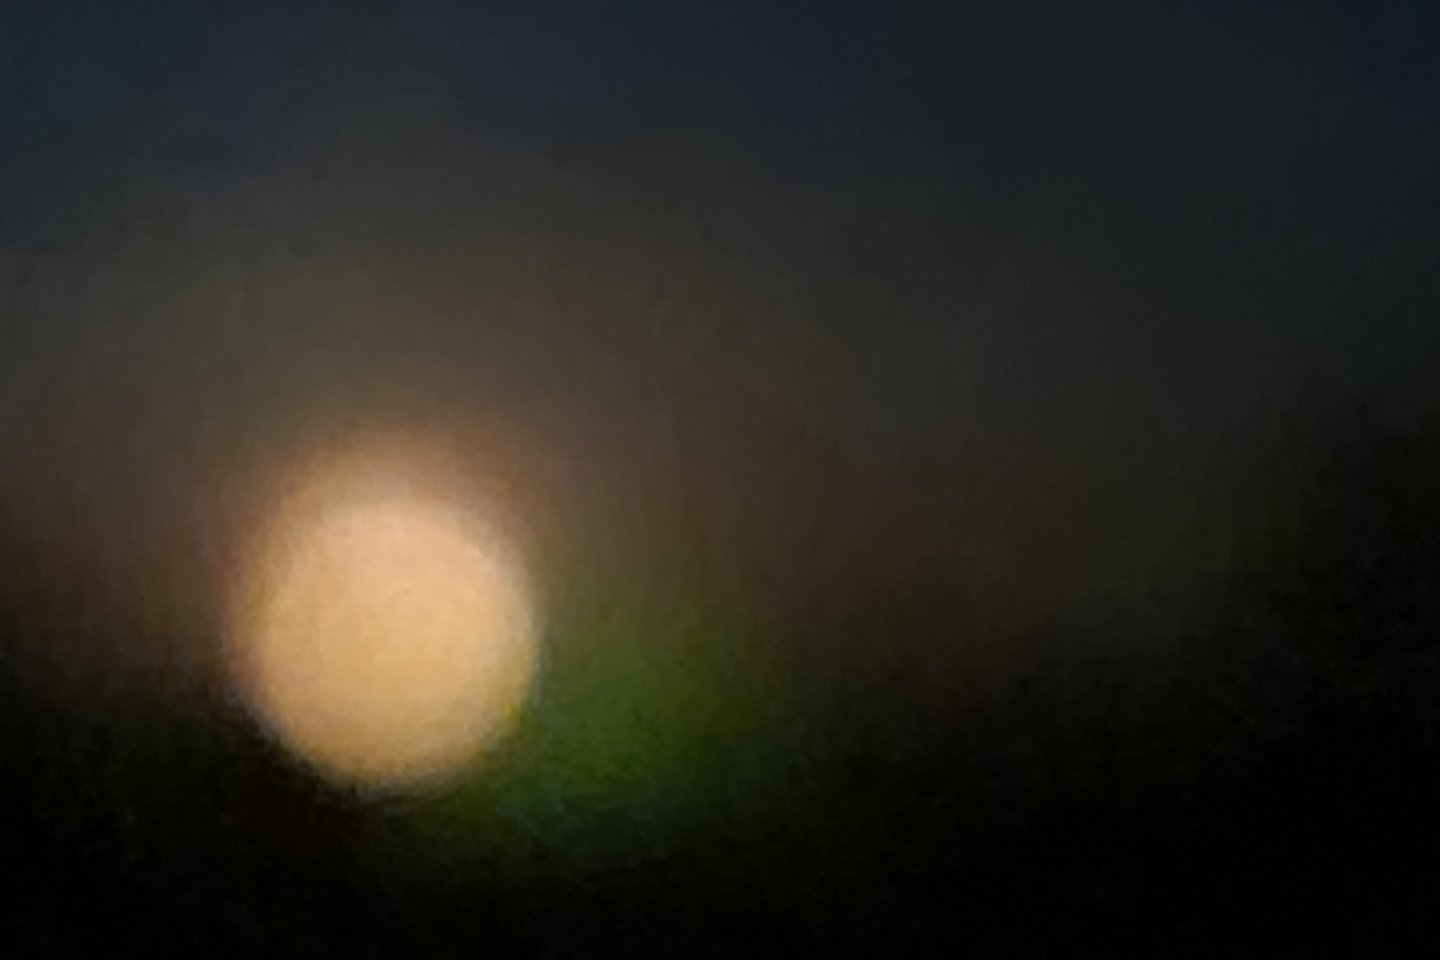  Bandymas fotografuoti Mėnulį su 10x priartinimu. Nesėkmė.<br> A. Rutkausko nuotr.